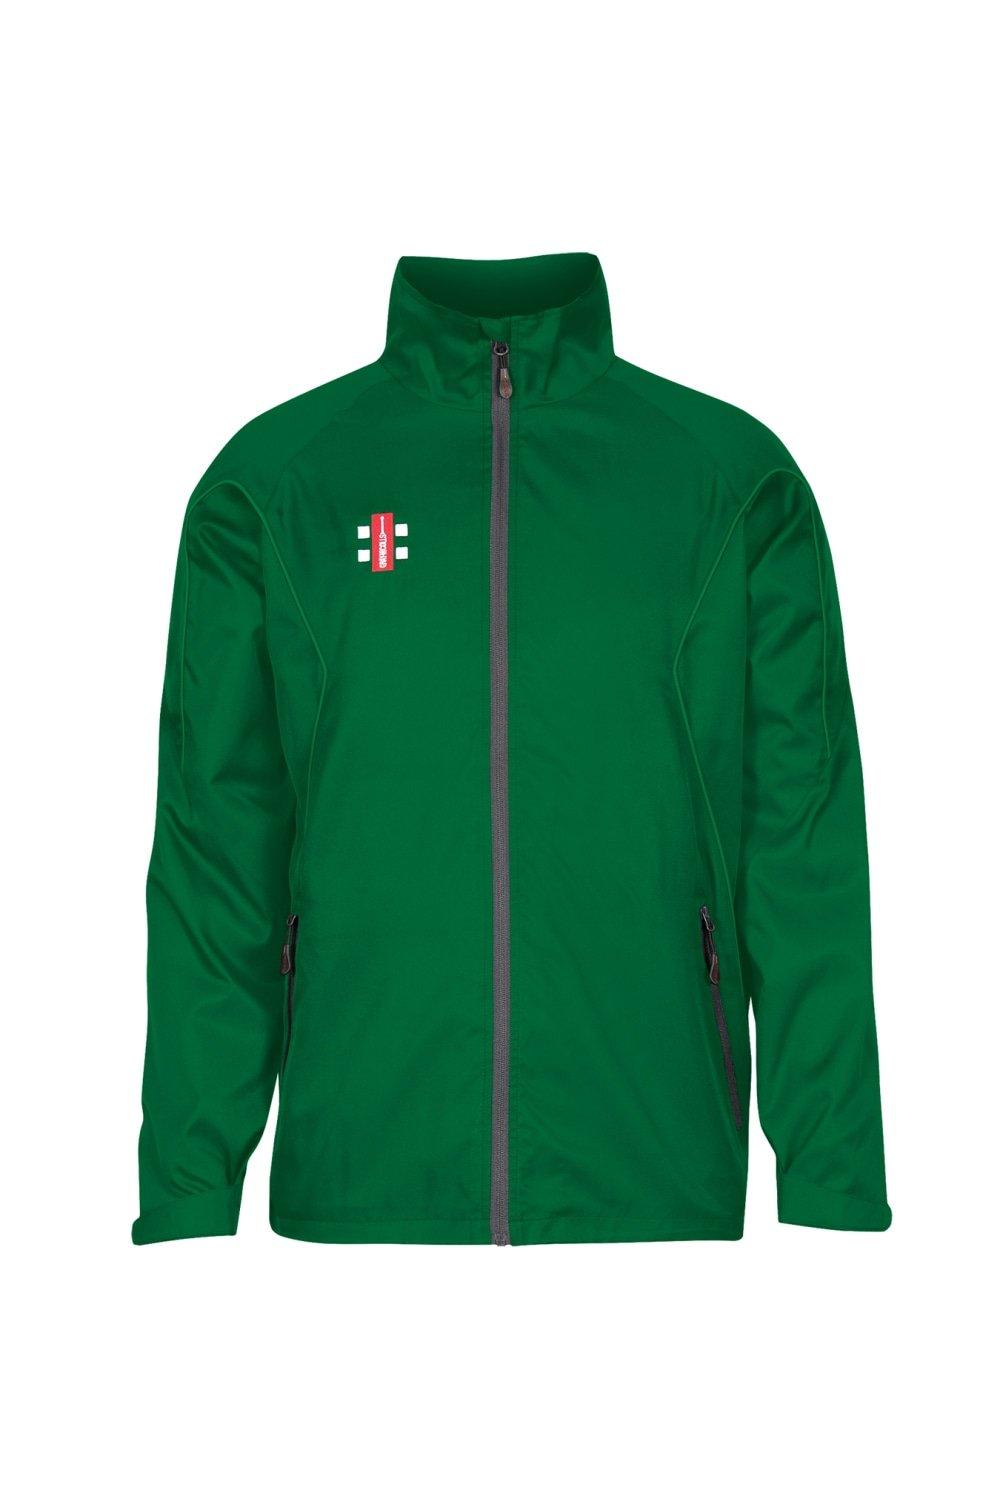 Тренировочная куртка Storm Gray-Nicolls, зеленый кофта kappahl базовая 42 44 размер